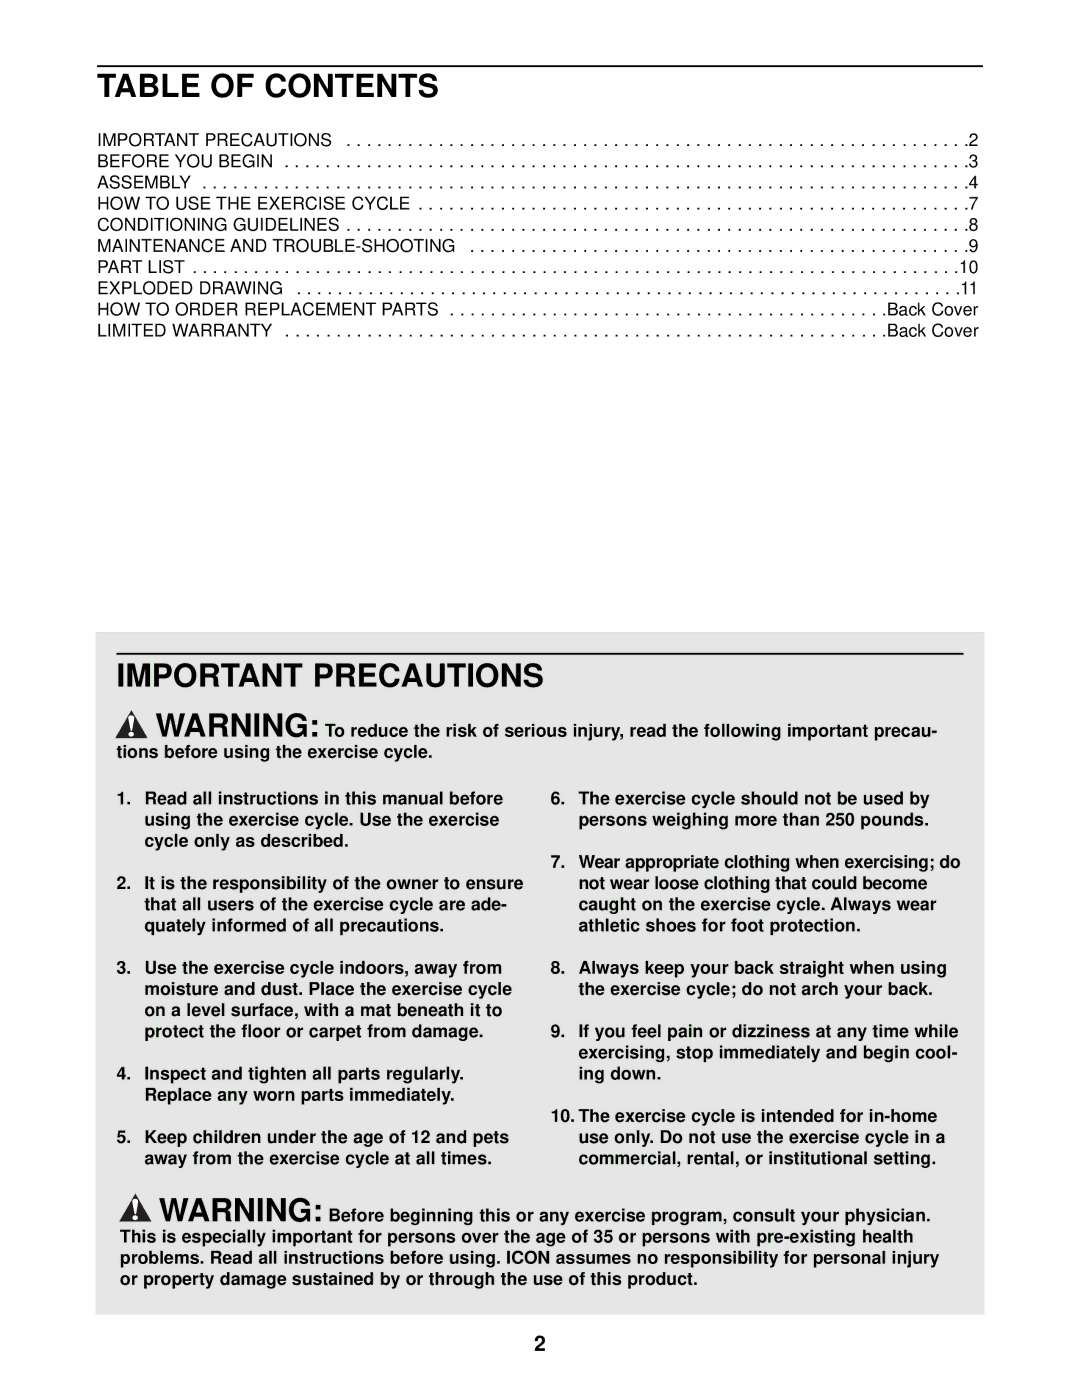 NordicTrack NTEX03990 user manual Table of Contents, Important Precautions 